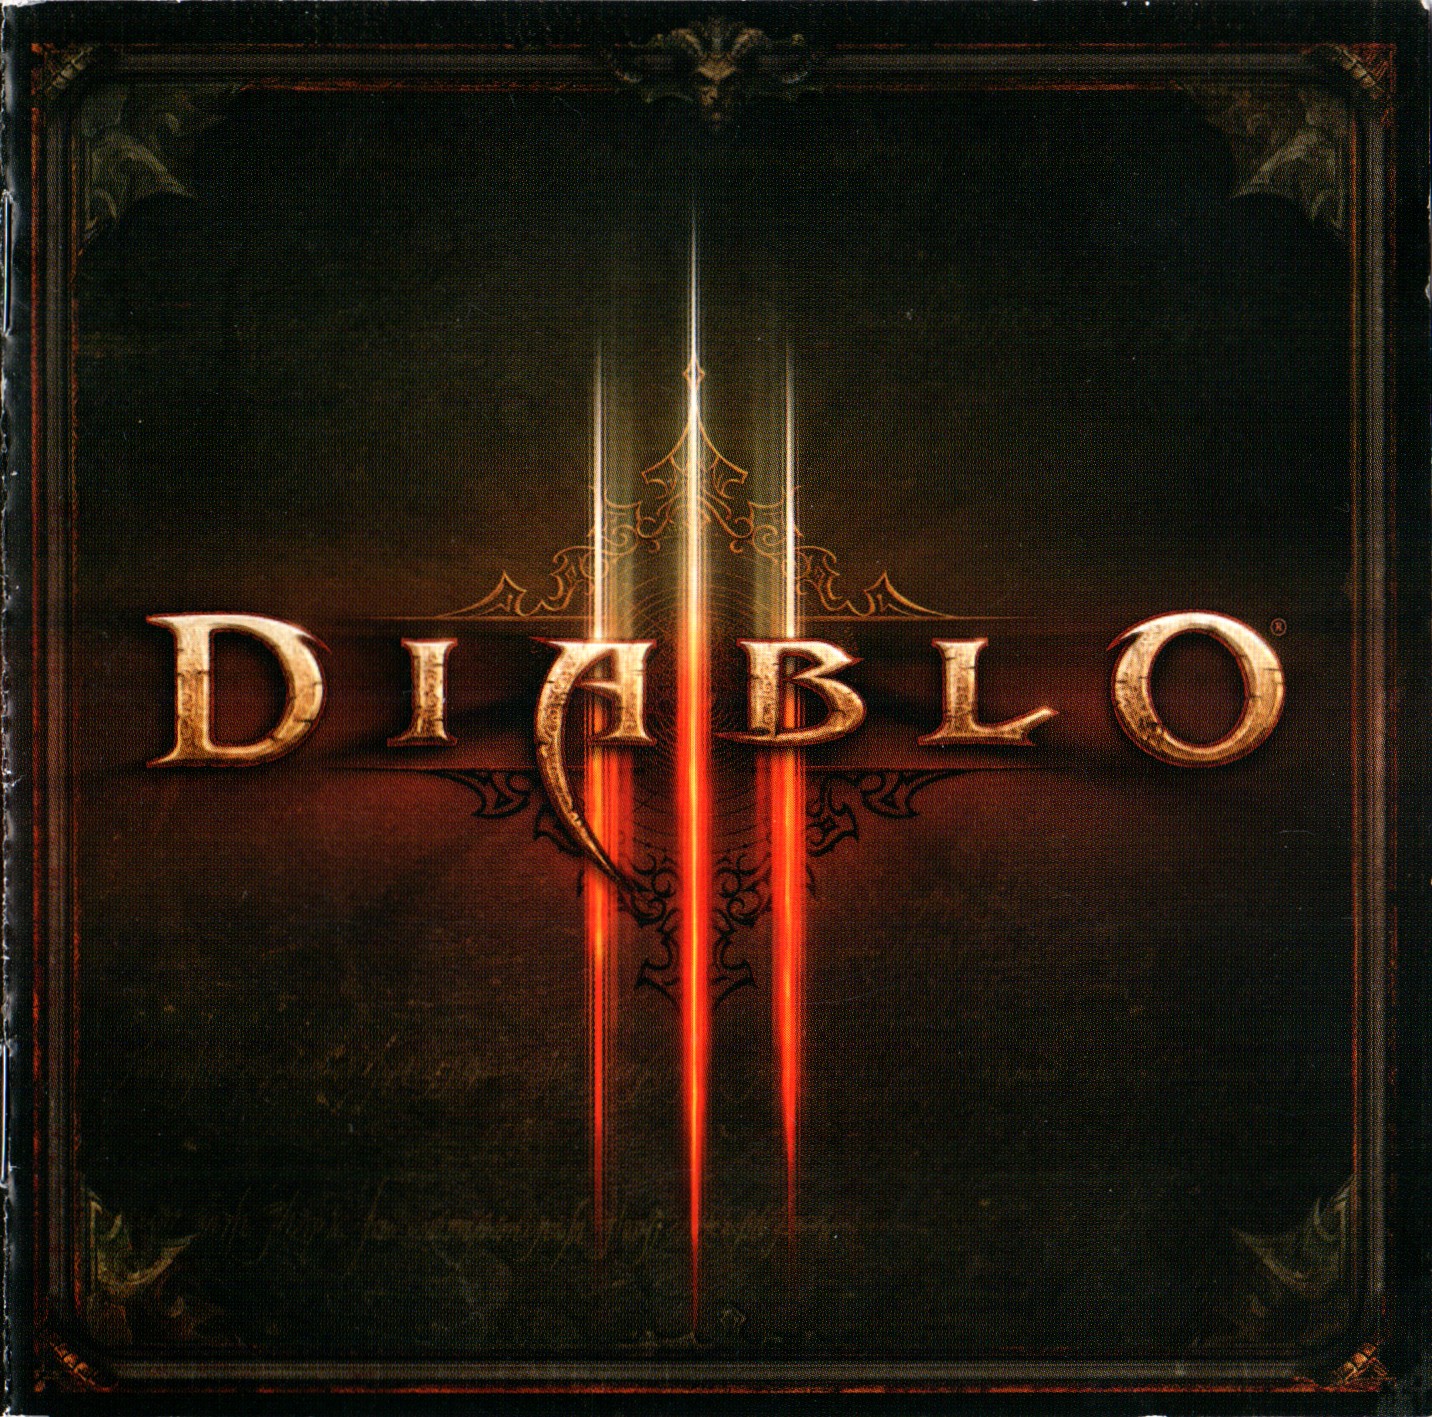 Diablo xbox купить. Diablo Xbox 360. Diablo 3 Xbox. Диабло 3 на Xbox. Хбокс диабло 1.